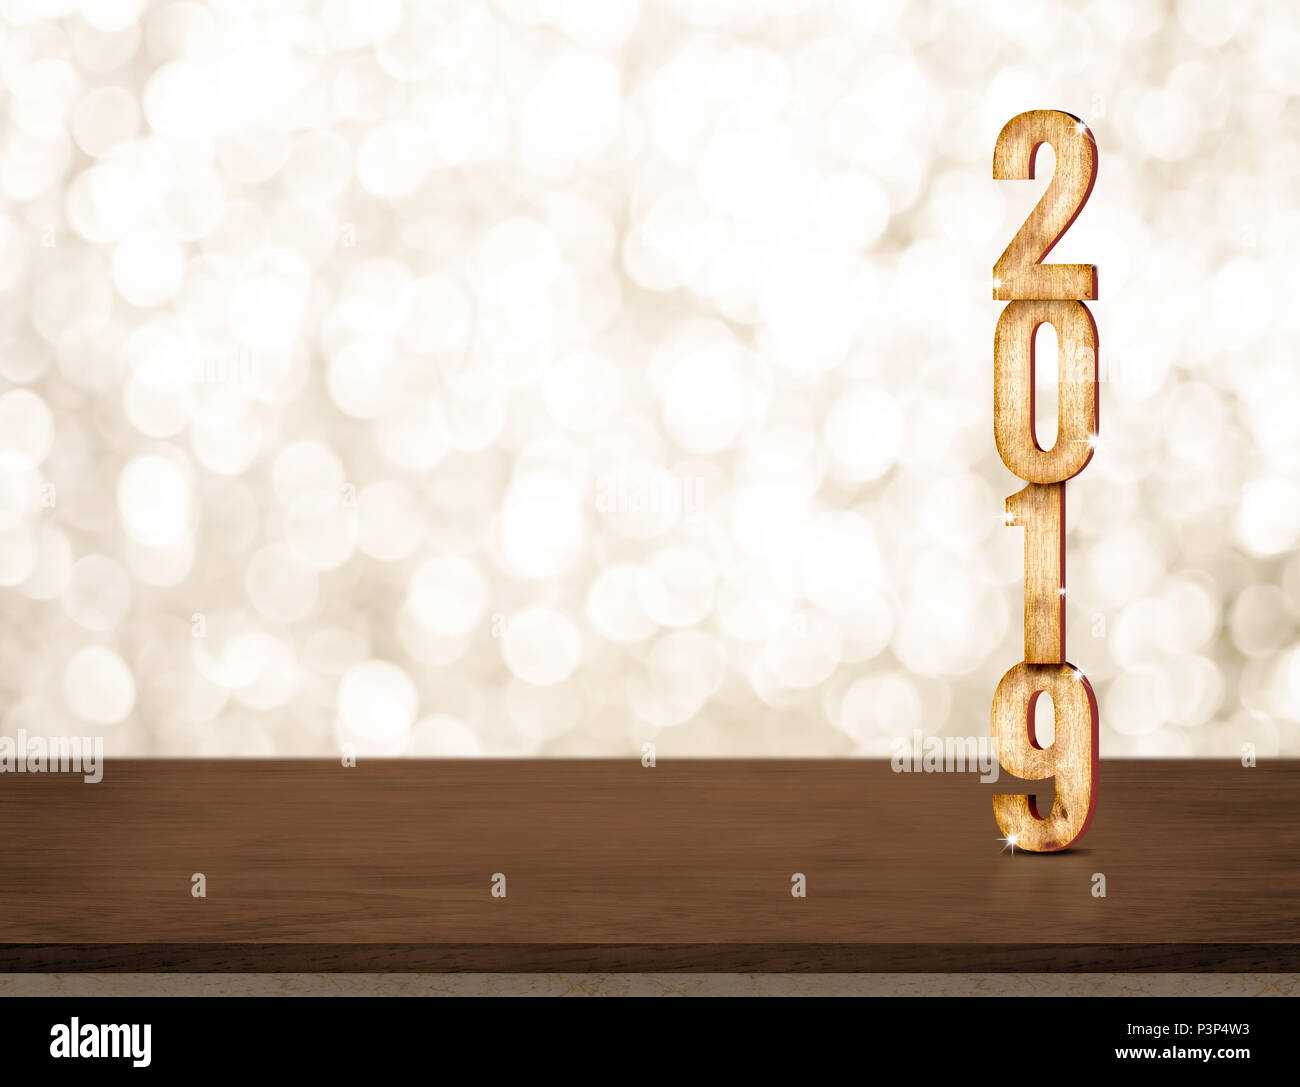 Frohes Neues Jahr 2019 gold glänzend mit funkelnder Stern am dunklen braunen Tisch mit Gold bokeh Wand, Urlaub festliche Feier Konzept. Kopieren Sie Raum für Mail-abruf Stockfoto